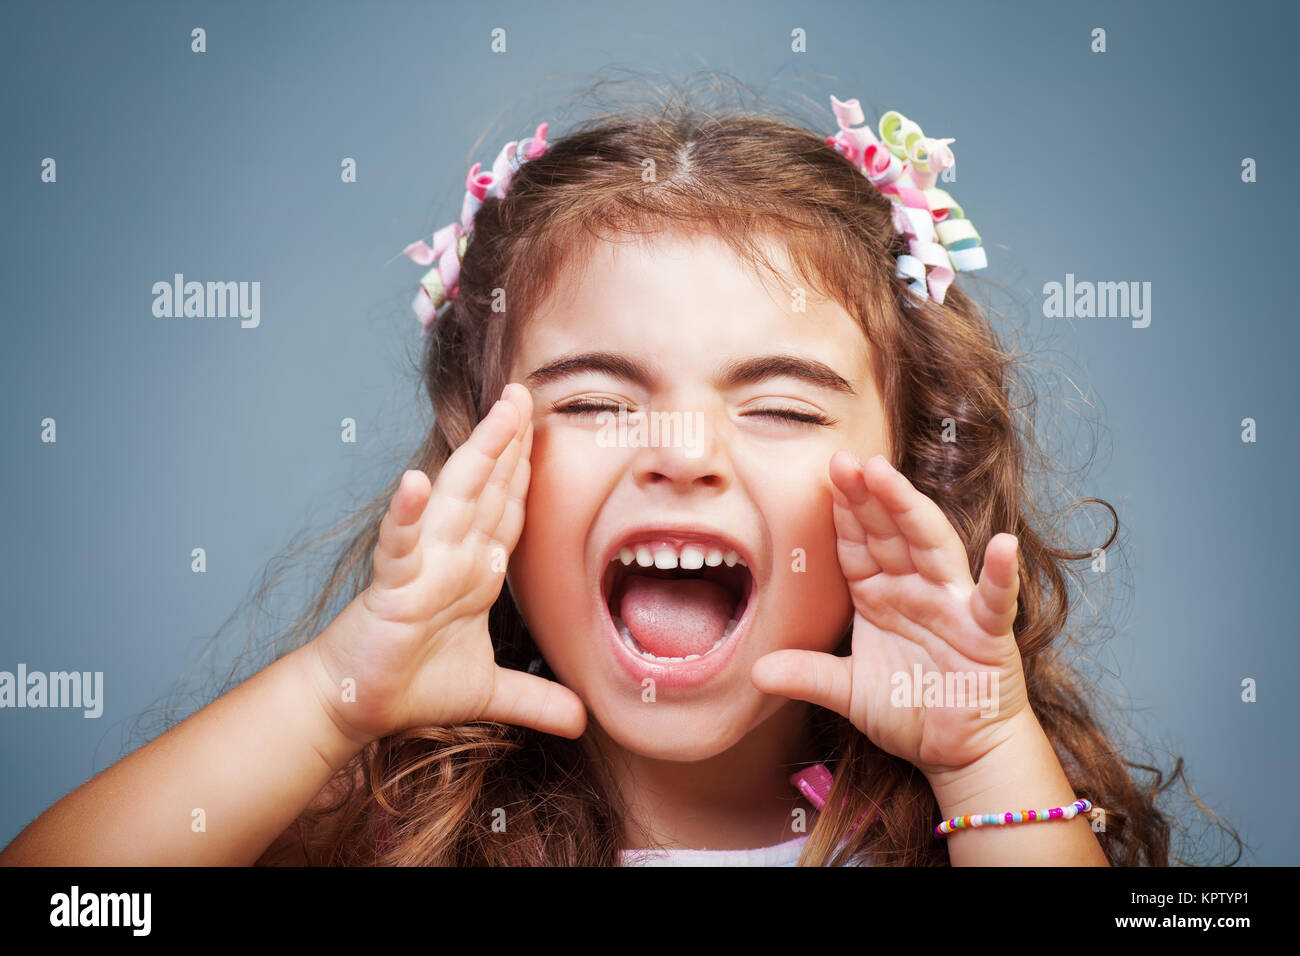 Little girl screaming Stock Photo